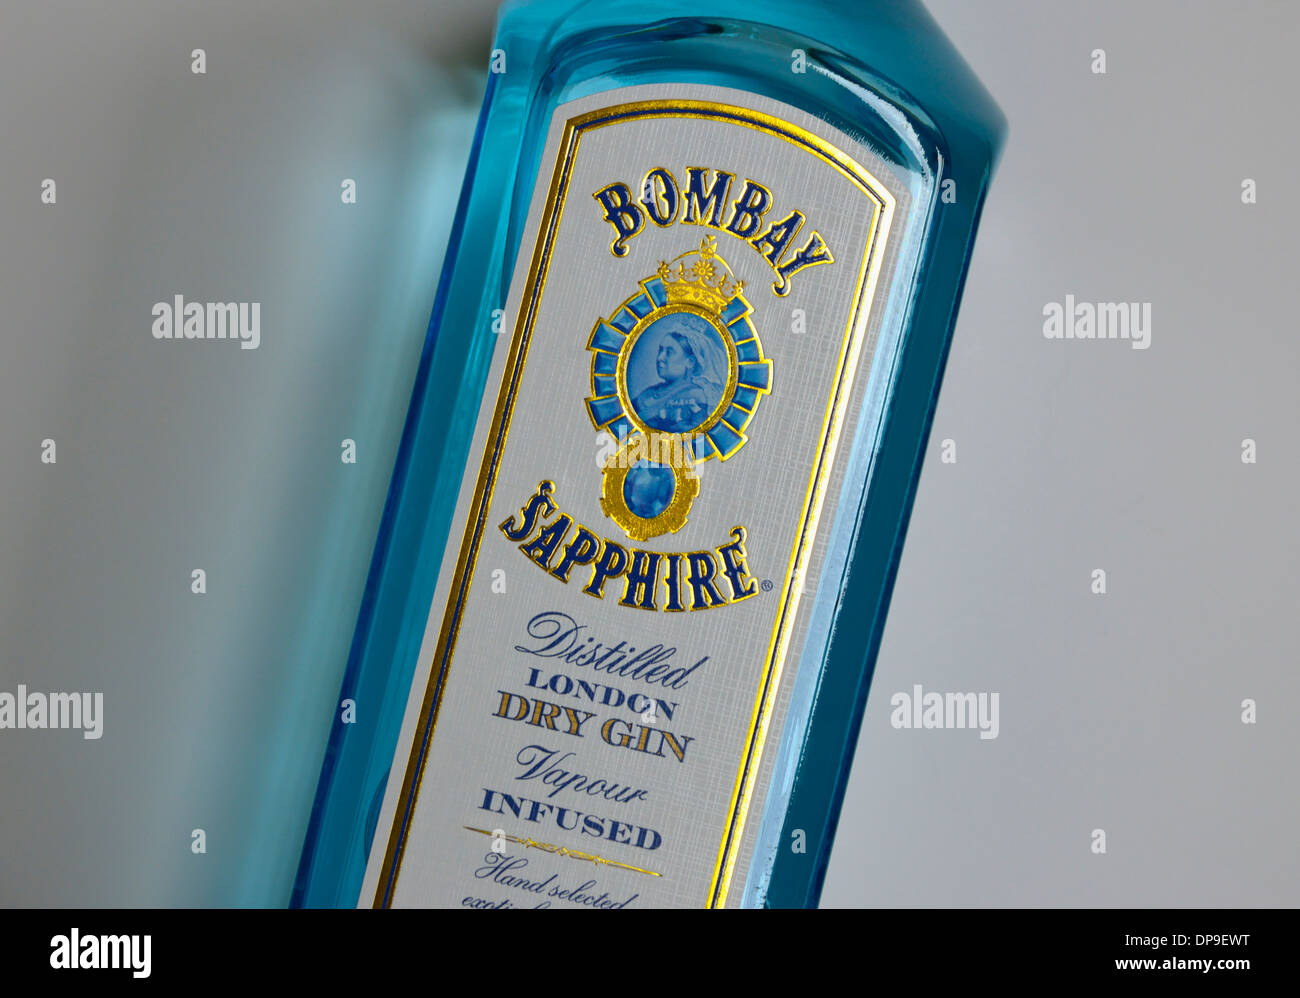 Bombay Sapphire destilliert London dry Gin. Dampf als Infusion verabreicht. Stockfoto